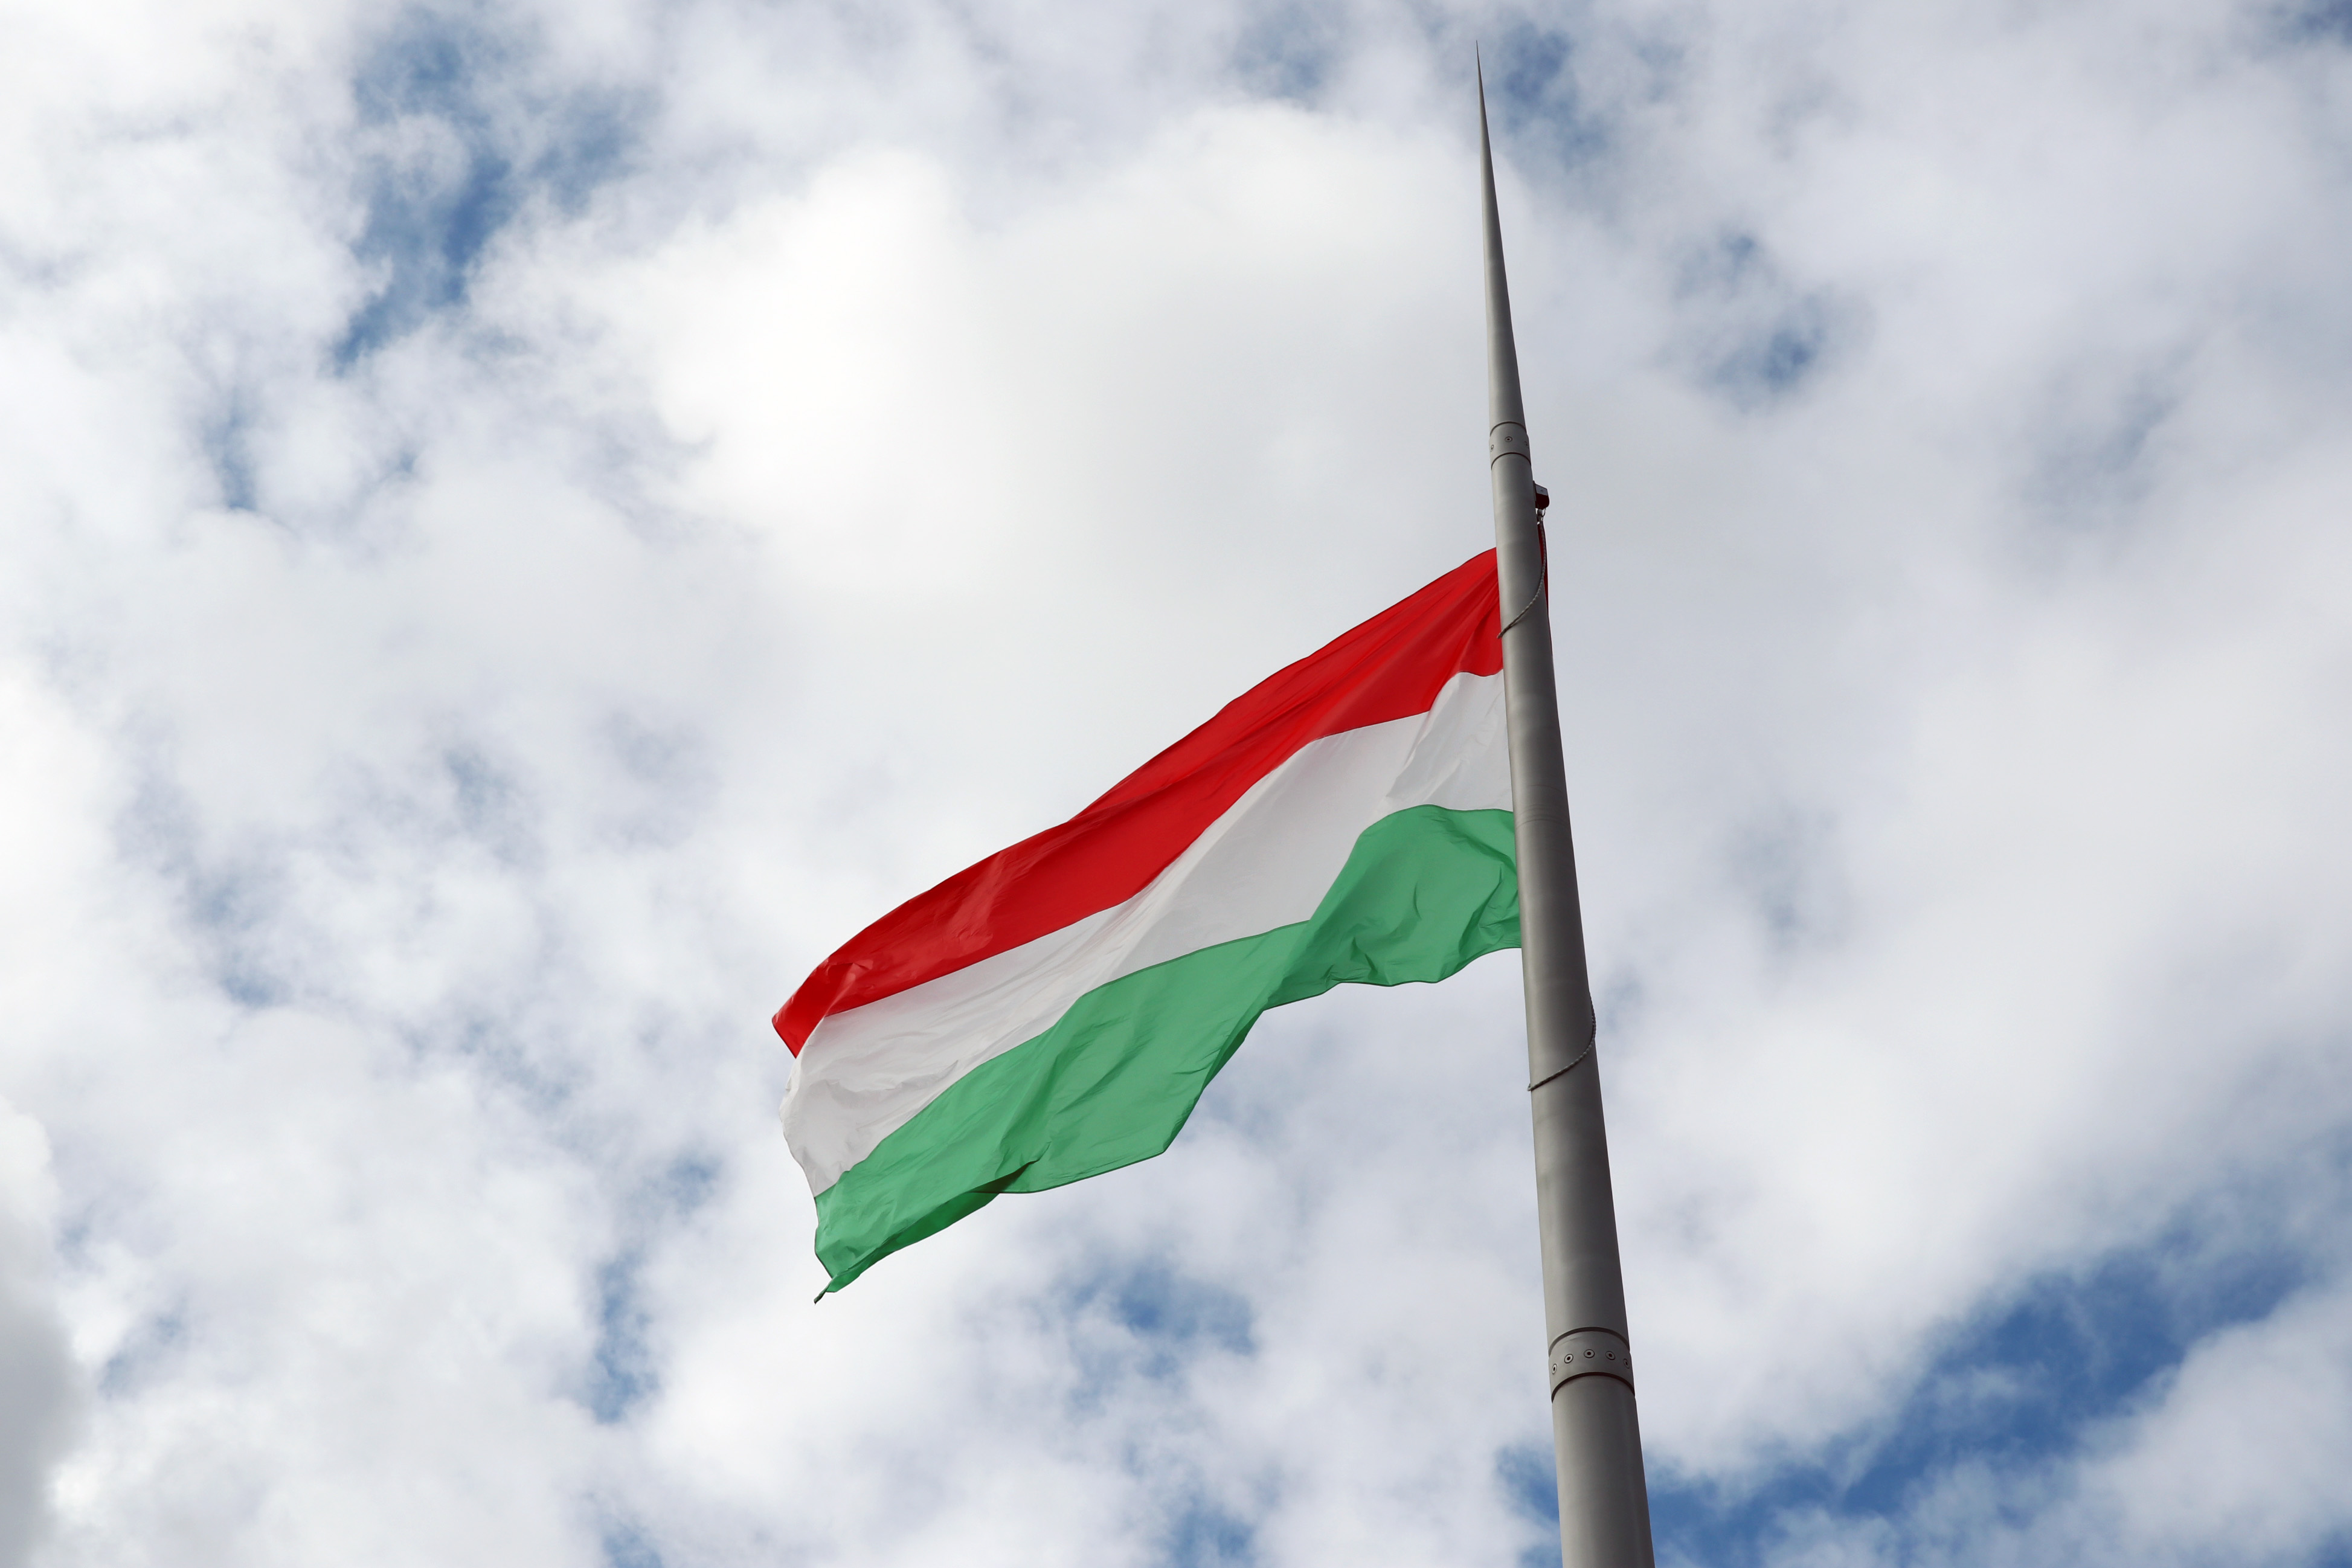 15月XNUMX日匈牙利国旗升起匈牙利国旗